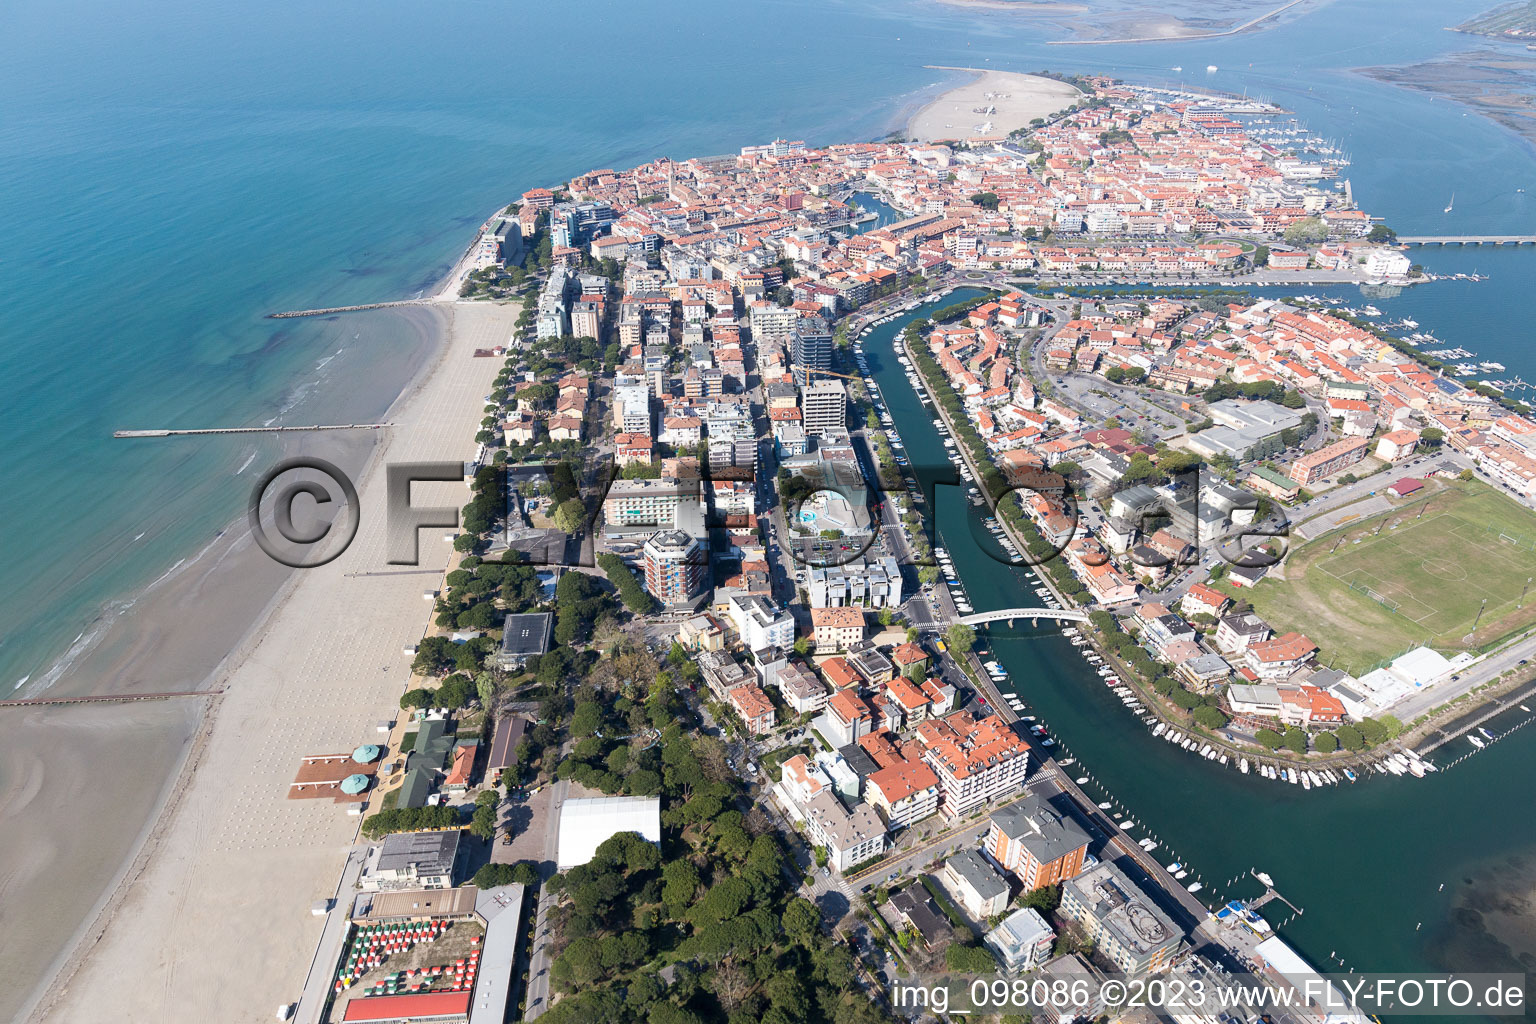 Aerial photograpy of Grado in the state Friuli Venezia Giulia, Italy